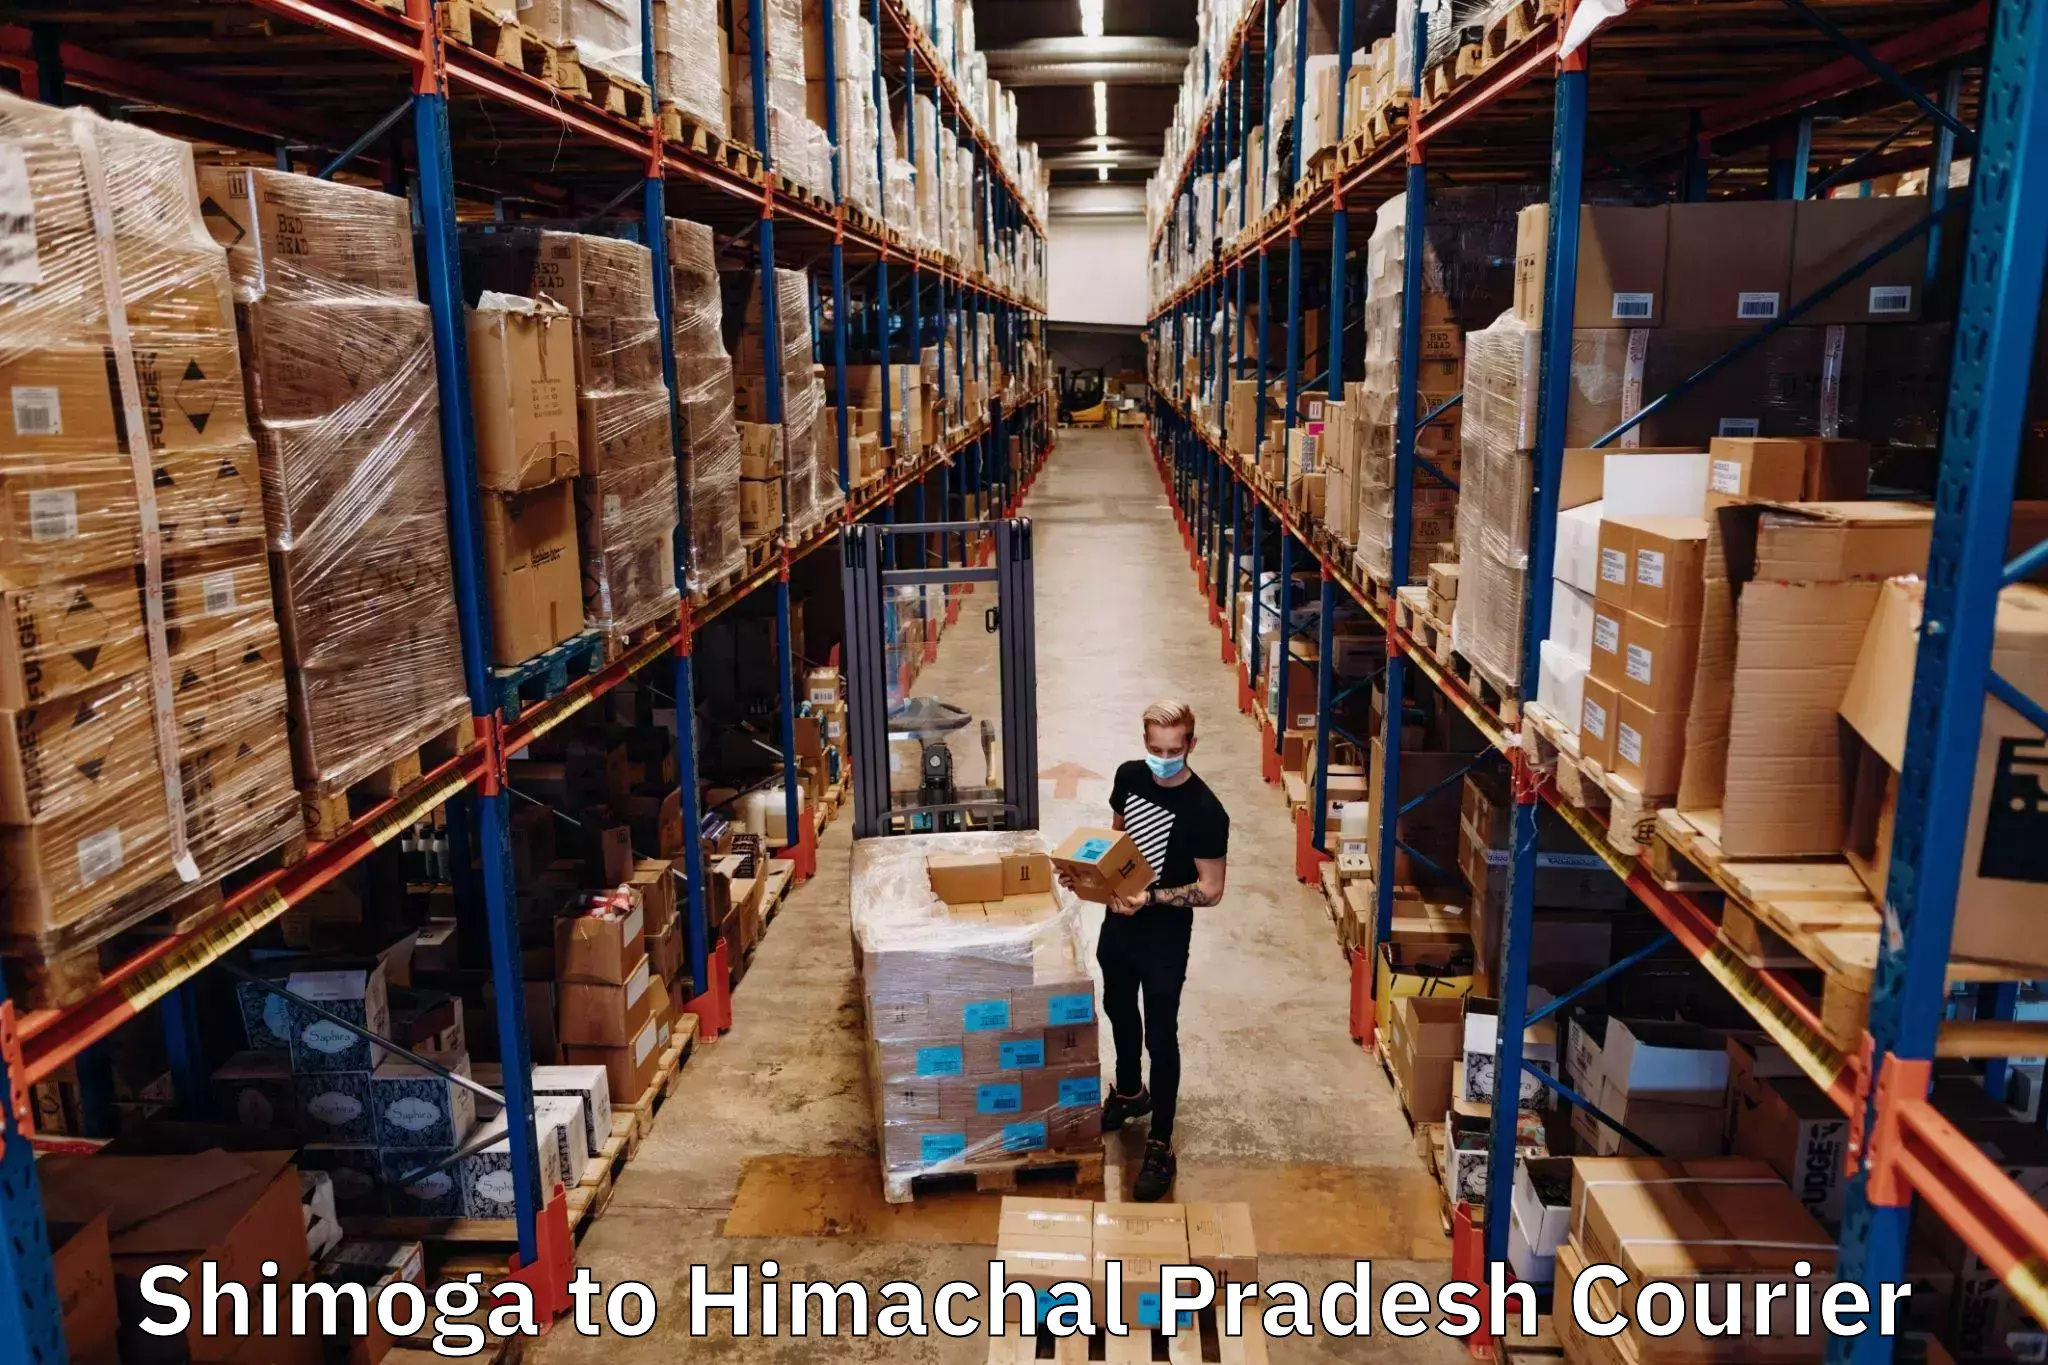 On-call courier service Shimoga to Himachal Pradesh